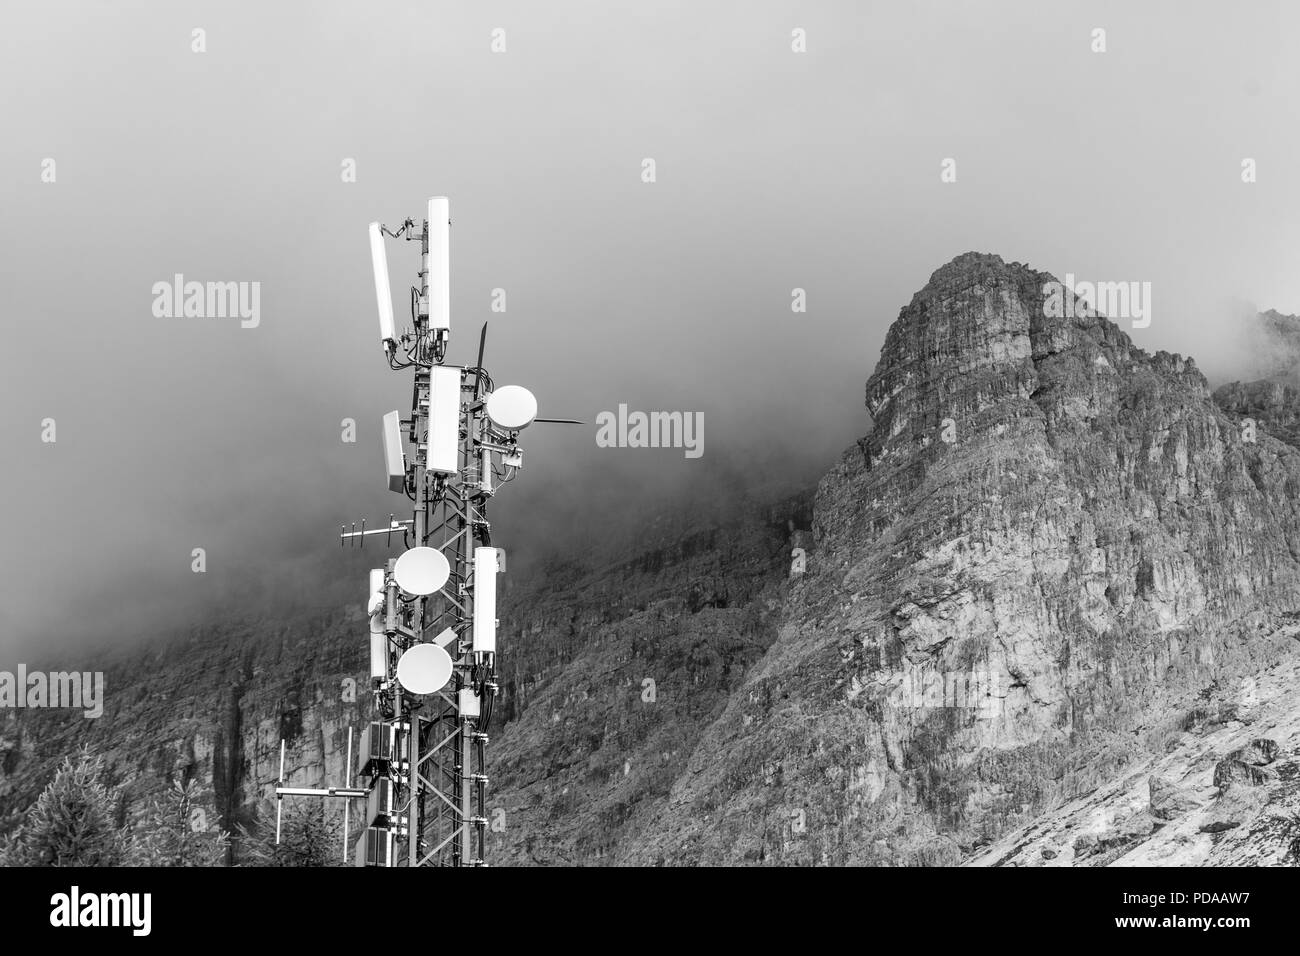 Estación de transmisor en la cima de una montaña, con nubes de tormenta se reúnen alrededor de un pico de montaña. Concepto de interferencia debido al mal tiempo Foto de stock